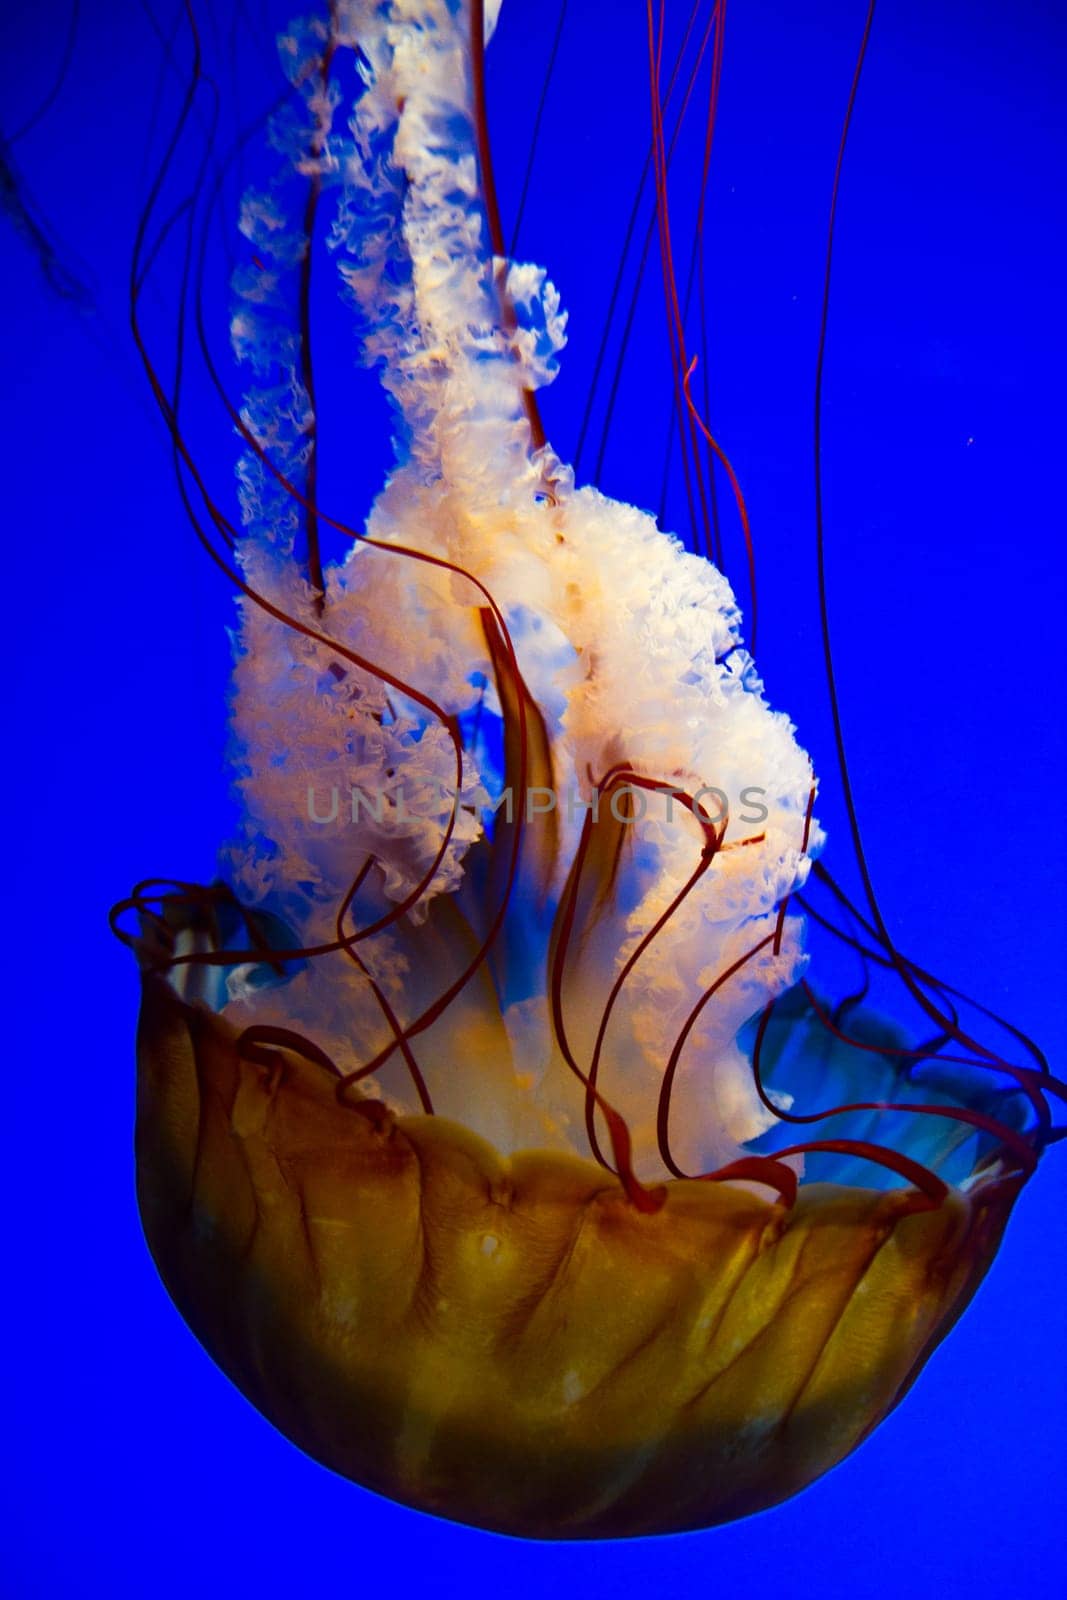 Glowing Jellyfish Dance in Deep Blue Ocean Depths, Tennessee Aquarium by njproductions